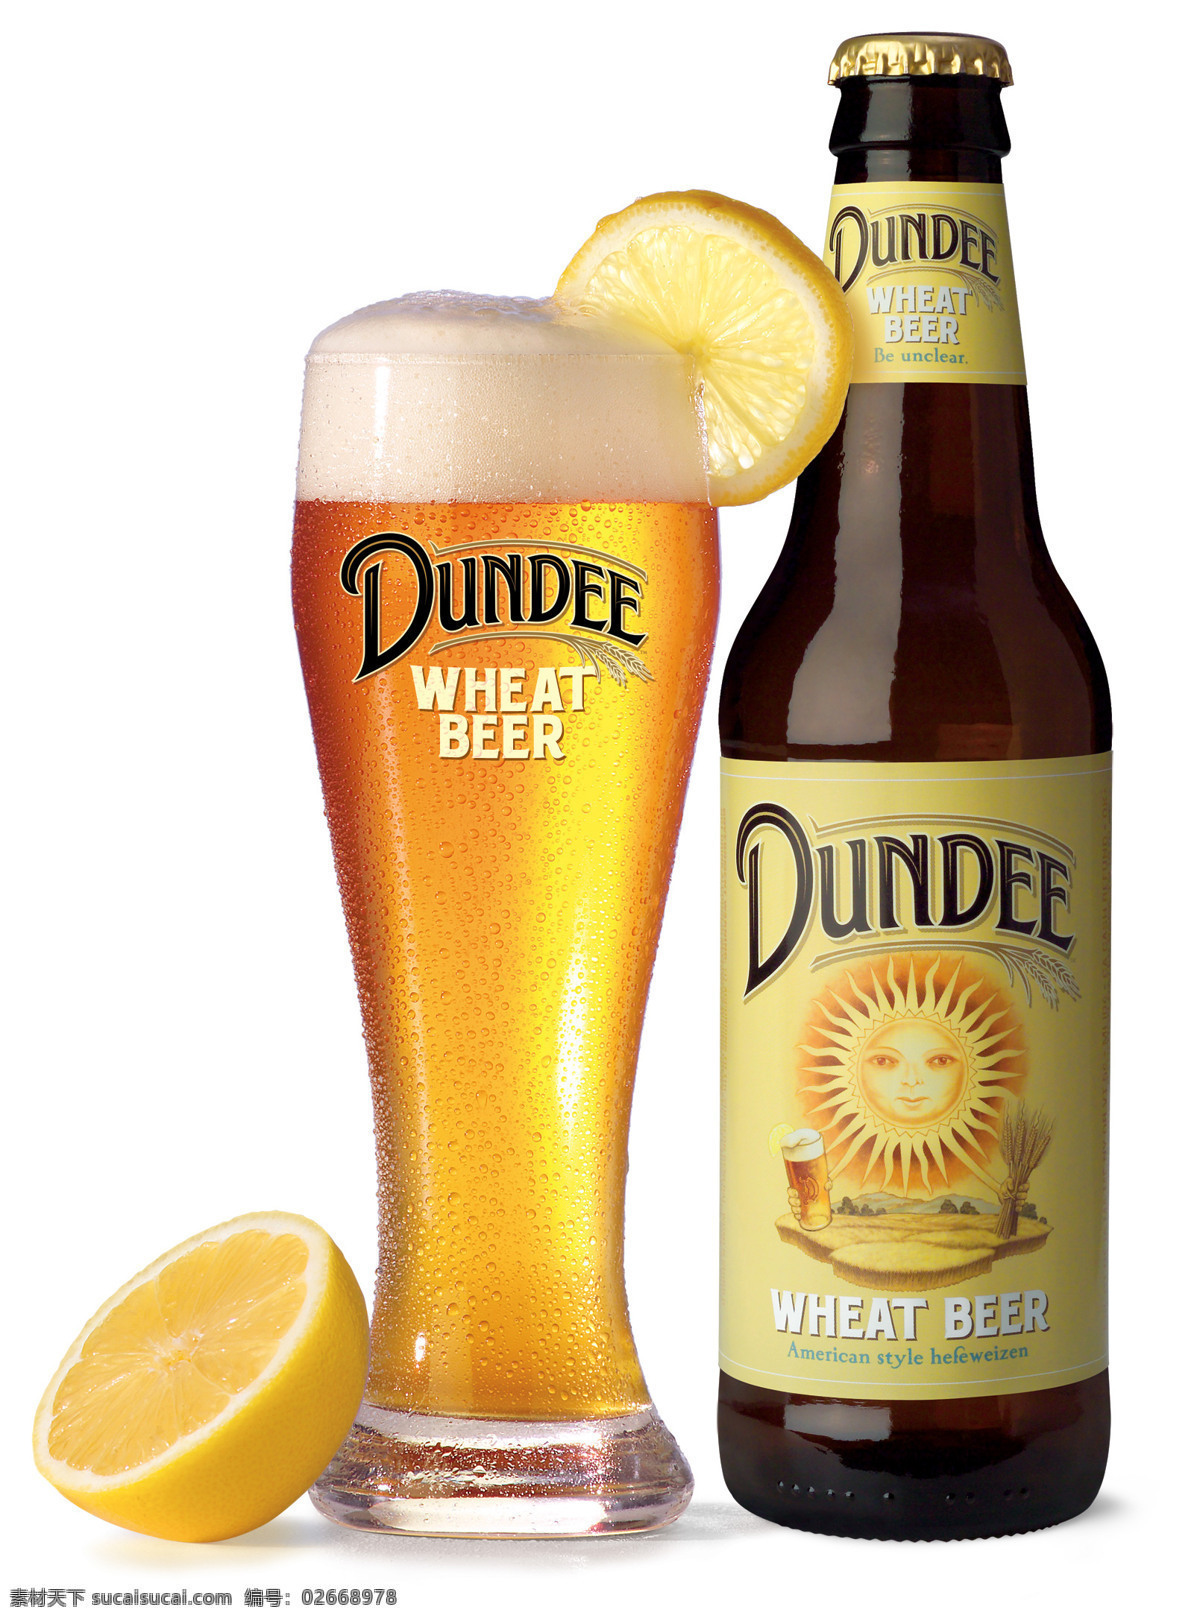 餐饮美食 橙子 啤酒杯 啤酒瓶 摄影图库 饮料酒水 dundee 啤酒 金色啤酒 啤酒泡沫 美国啤酒 矢量图 日常生活